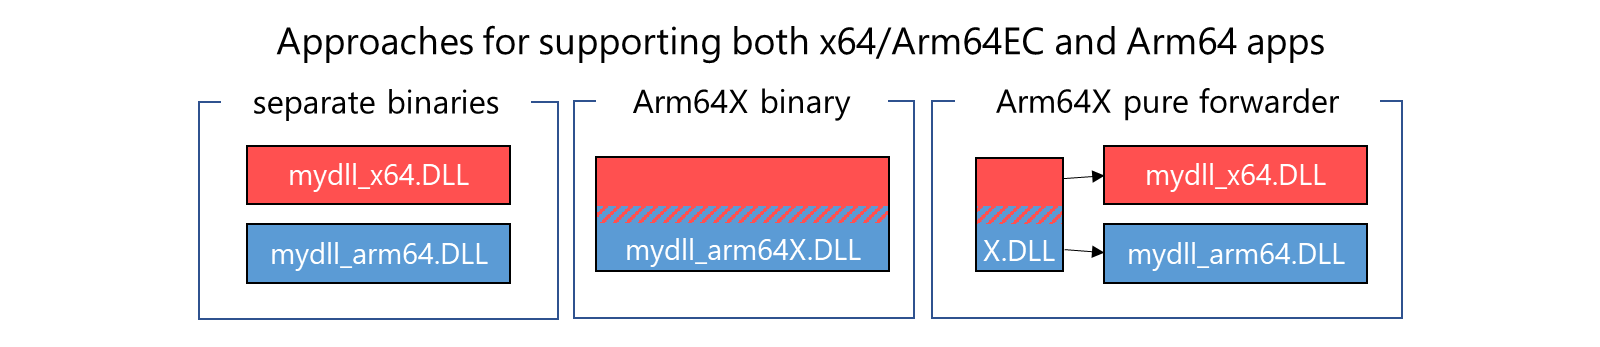 Drei Ansätze zur Unterstützung von Apps für separate Binärdateien, Arm64x Binärdateien, Arm64X pure Weiterleitungen, die x64/Arm64EC mit Arm64-Binärdateien kombinieren